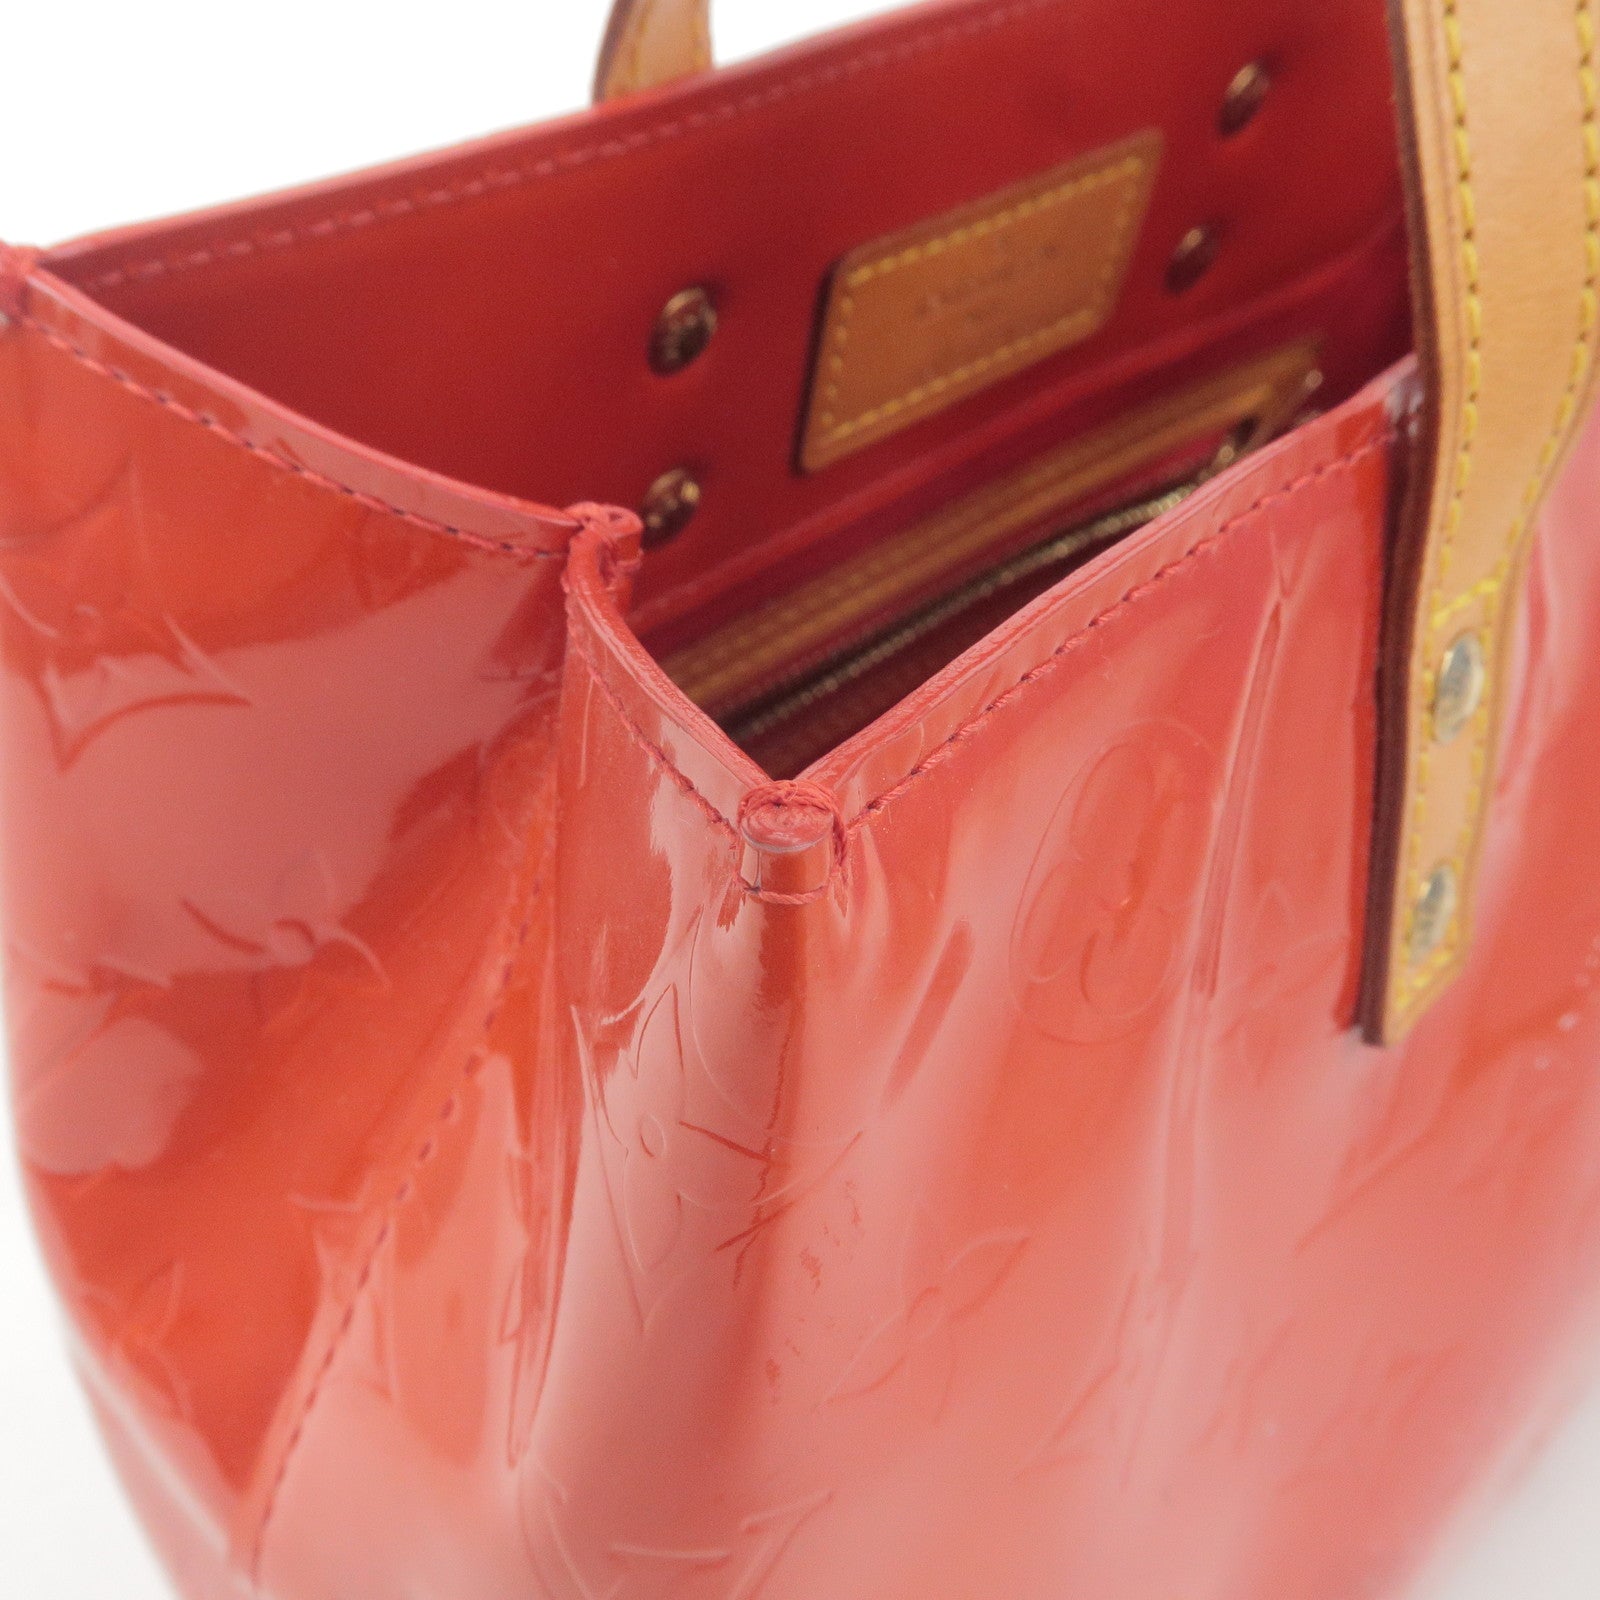 Louis Vuitton Louis Vuitton Rouge Red Vernis Leather Reade PM Handbag